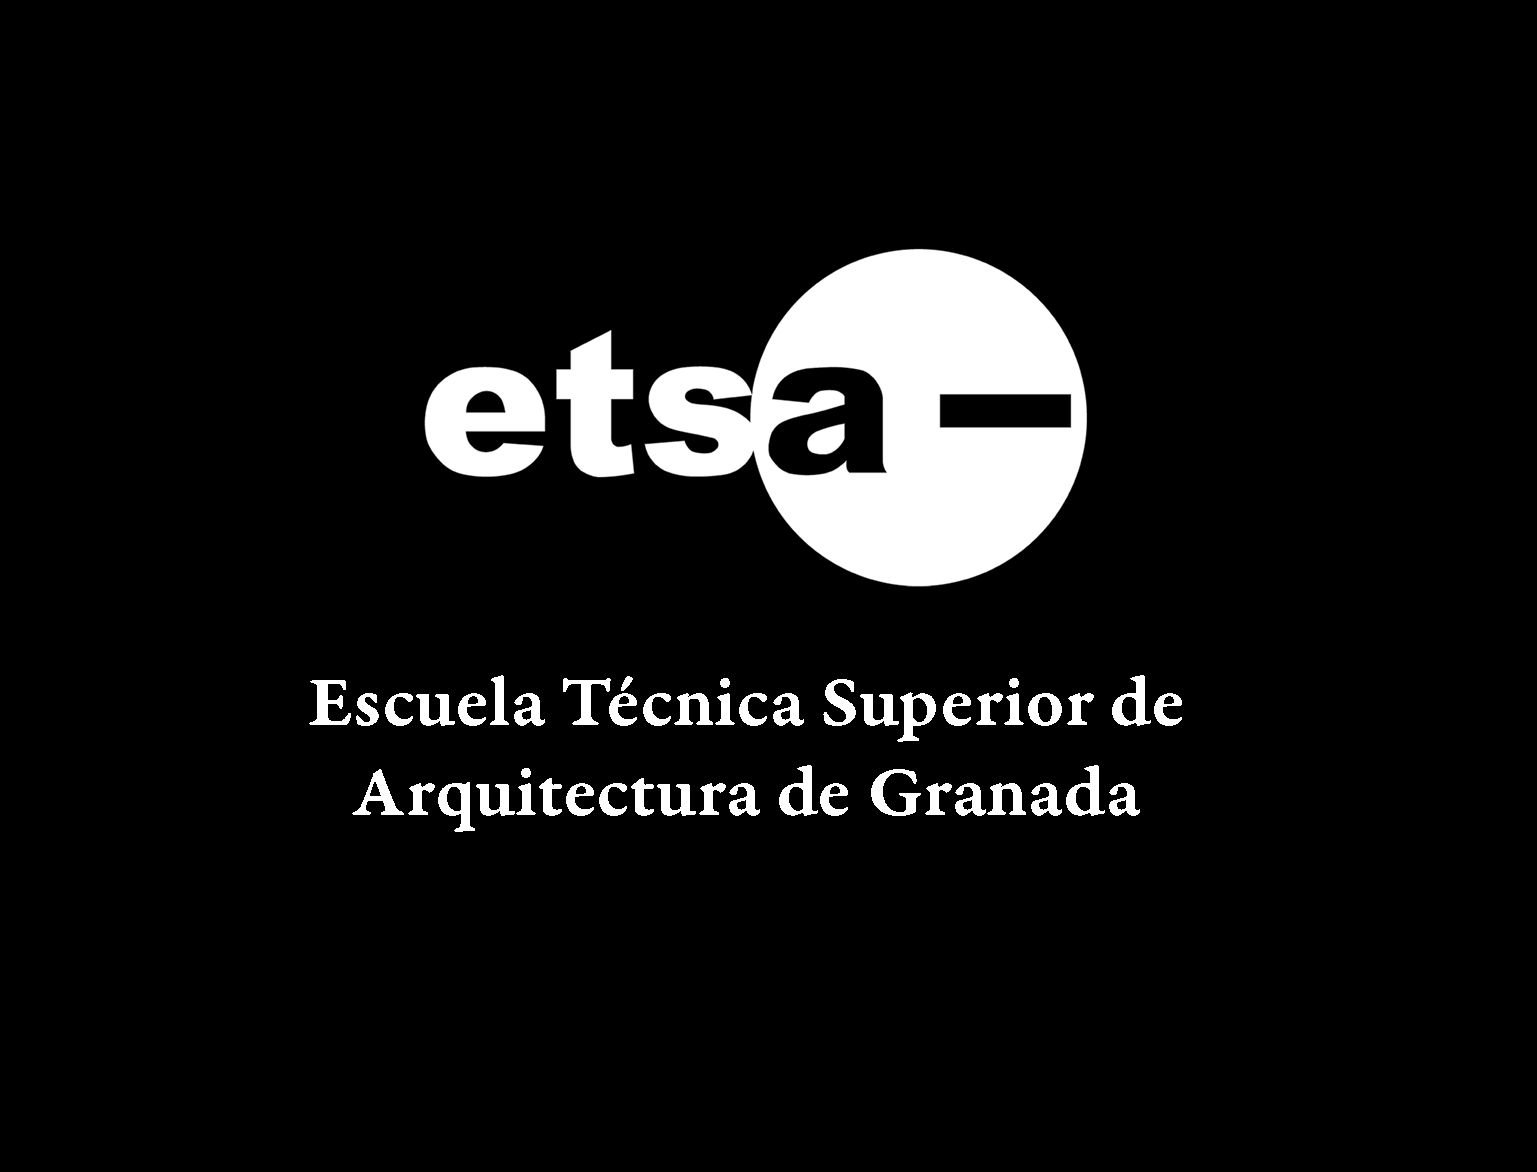 Cuenta oficial de la Escuela Técnica Superior de Arquitectura de la Universidad de Granada.